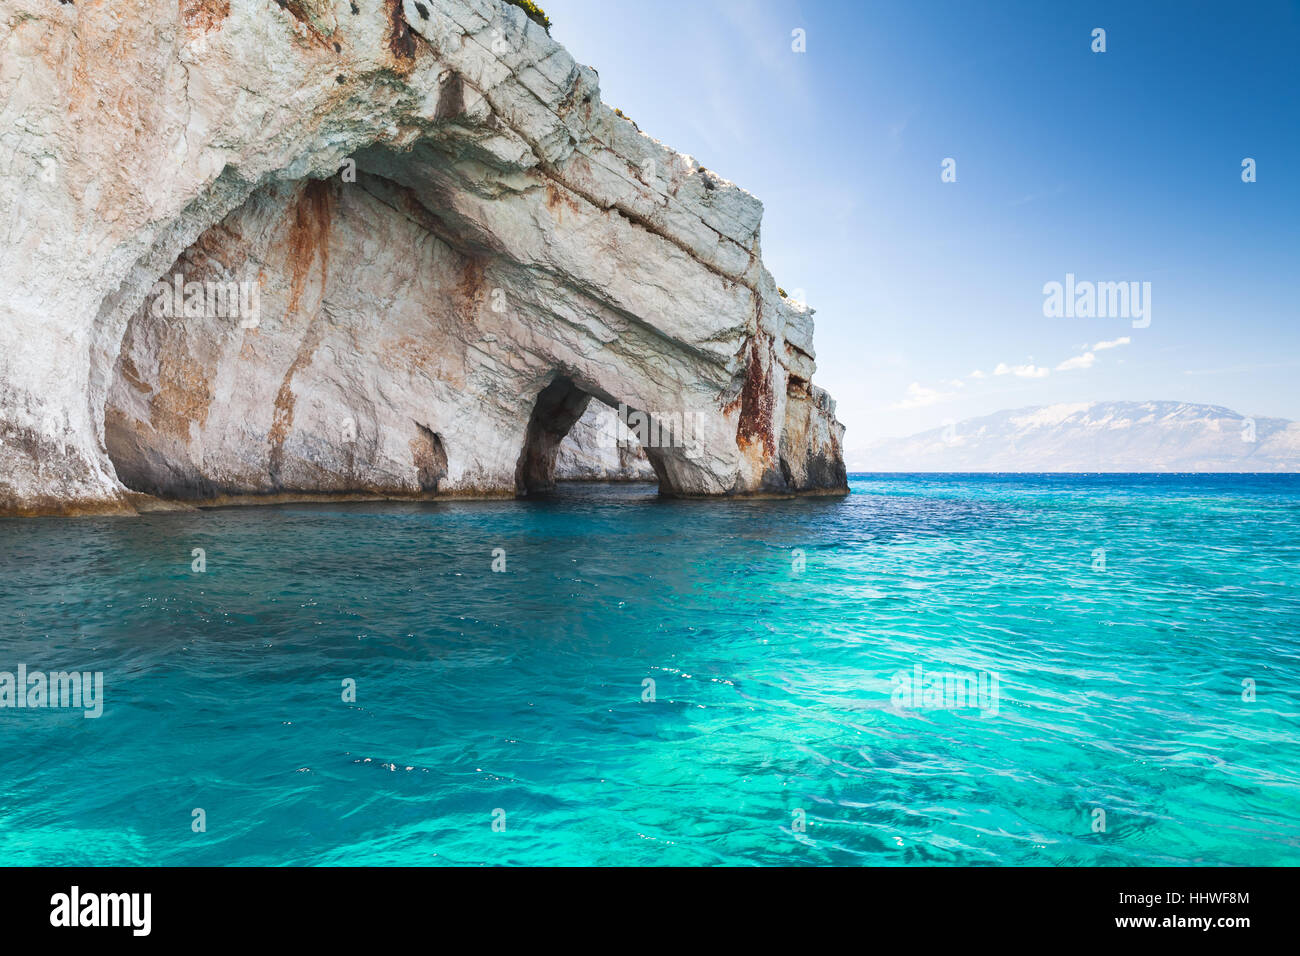 Grotte blu, rocce costiere dell'isola greca di Zante con archi di pietra naturale, landmark popolare destinazione turistica Foto Stock